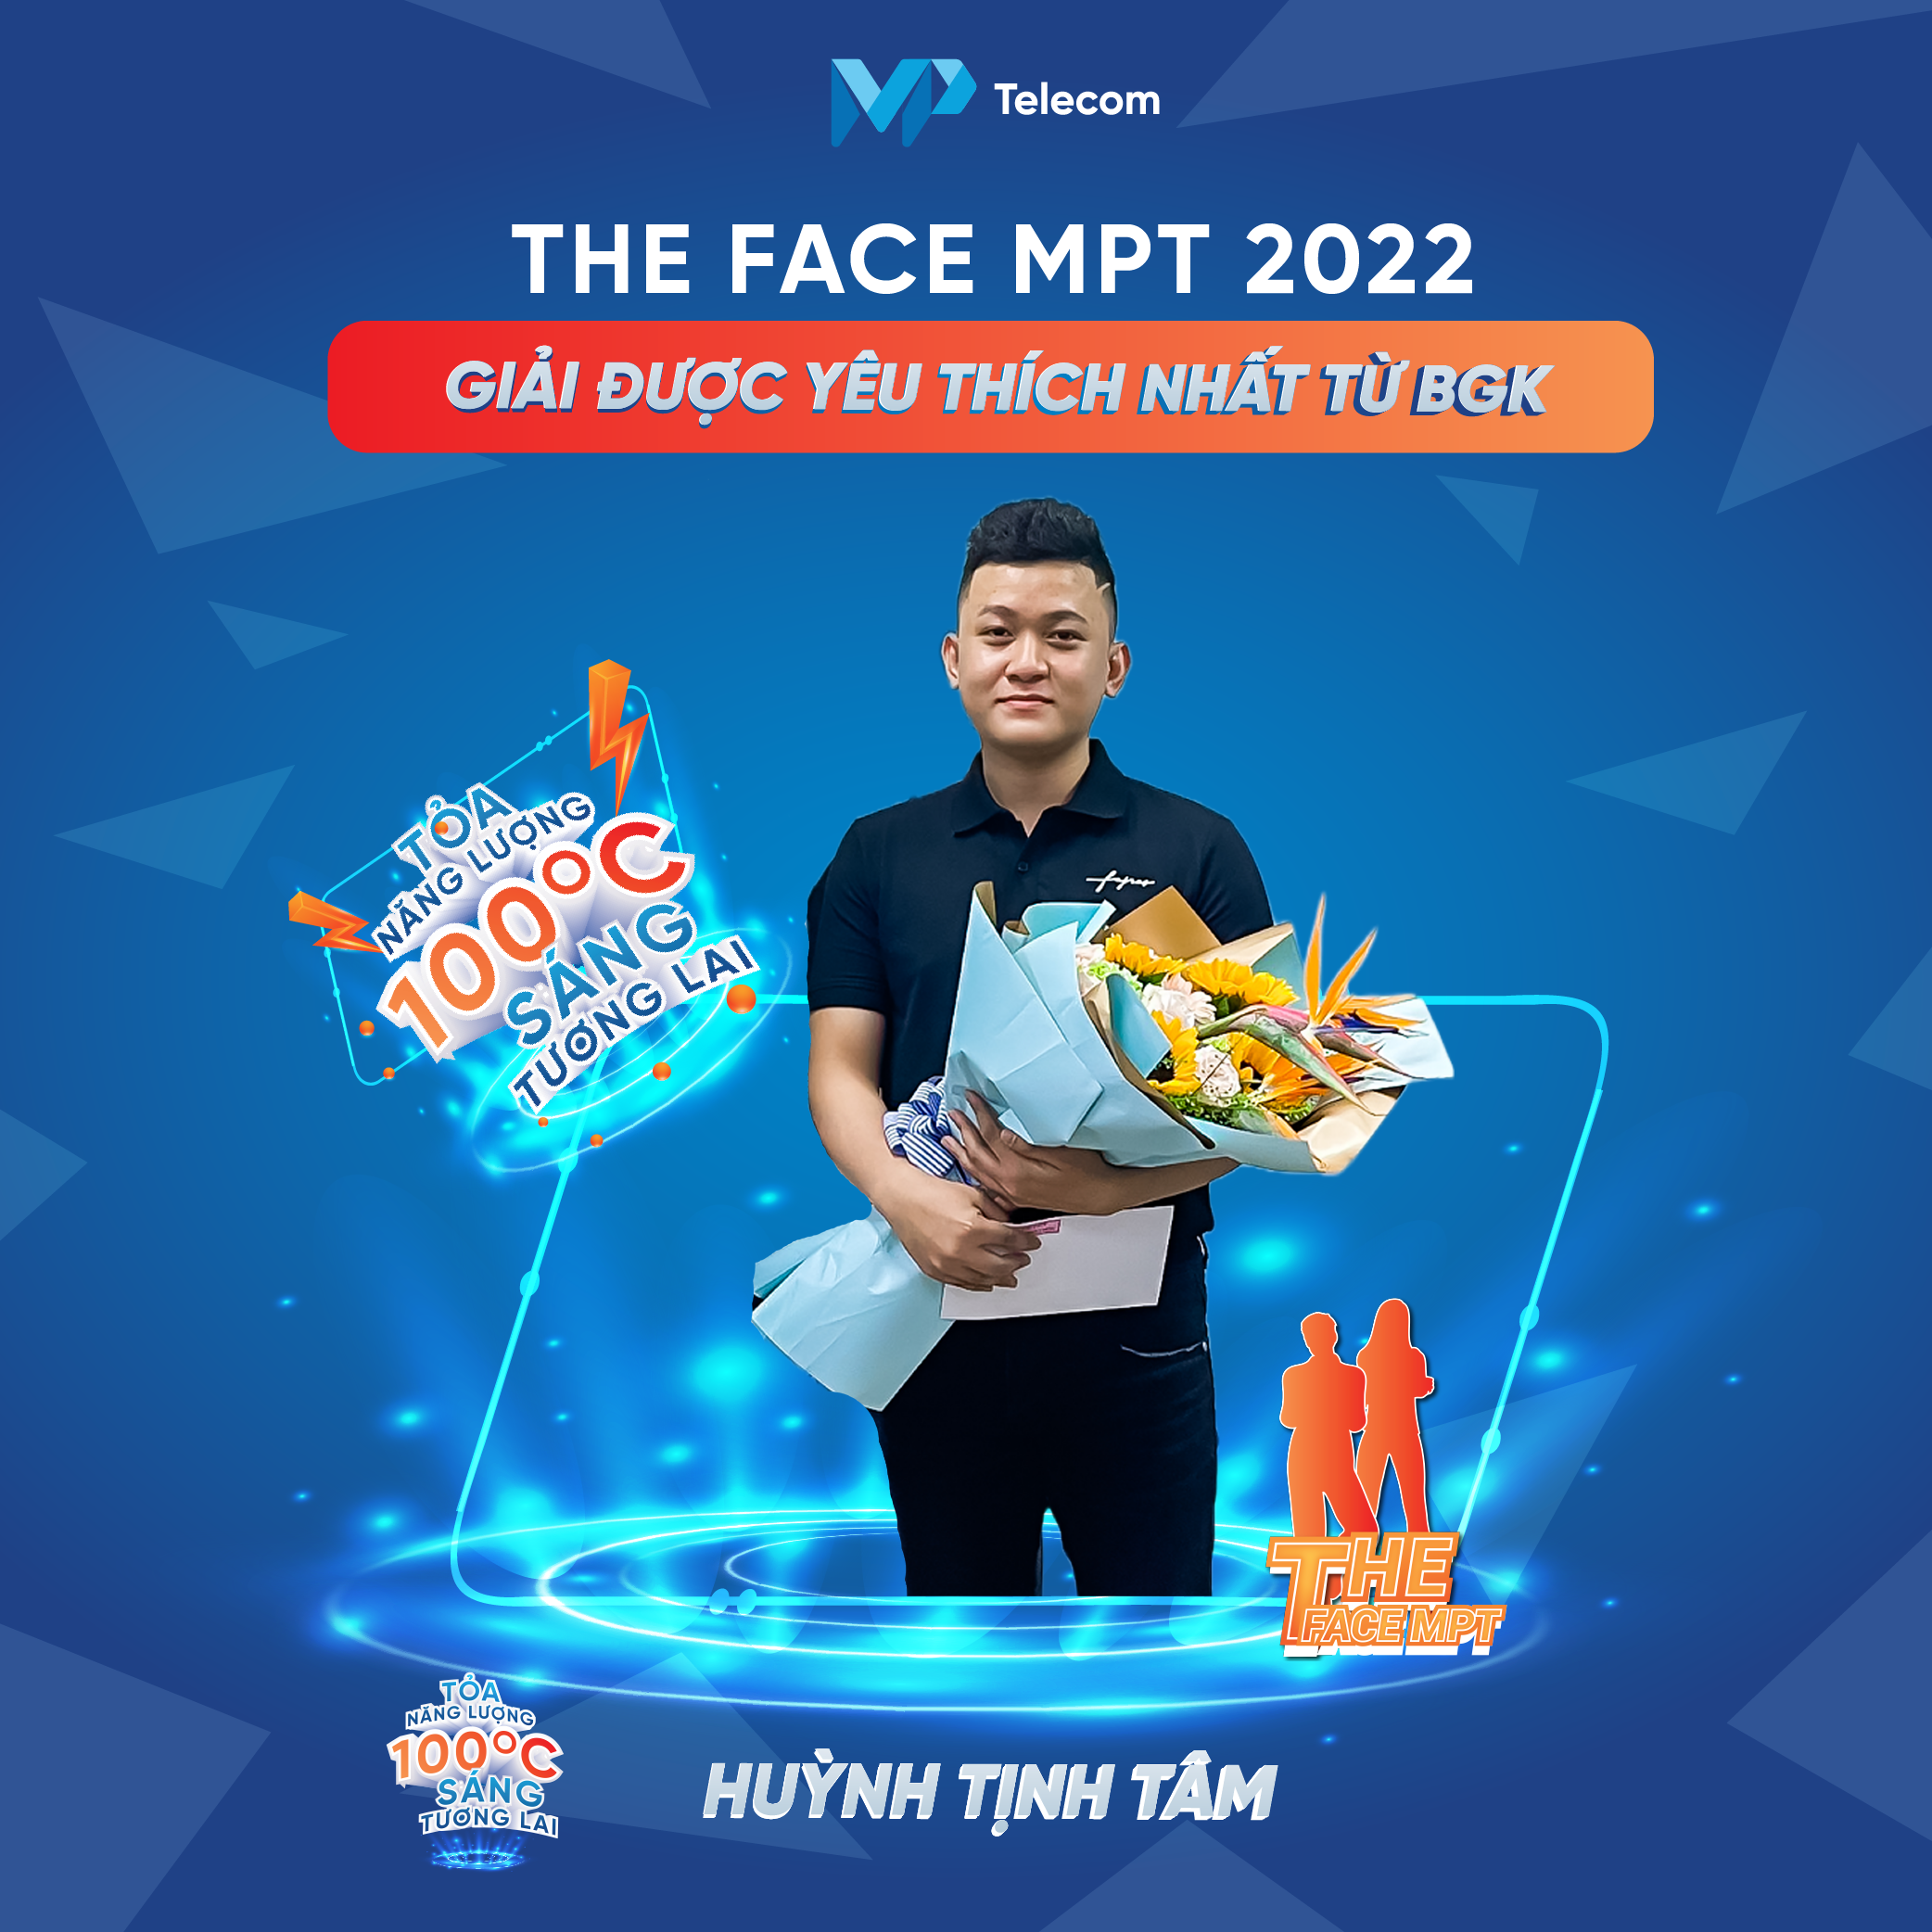 Huỳnh Tịnh Tâm - Thí sinh được bình chọn là gương mặt được yêu thích nhất của The Face MPT 2022